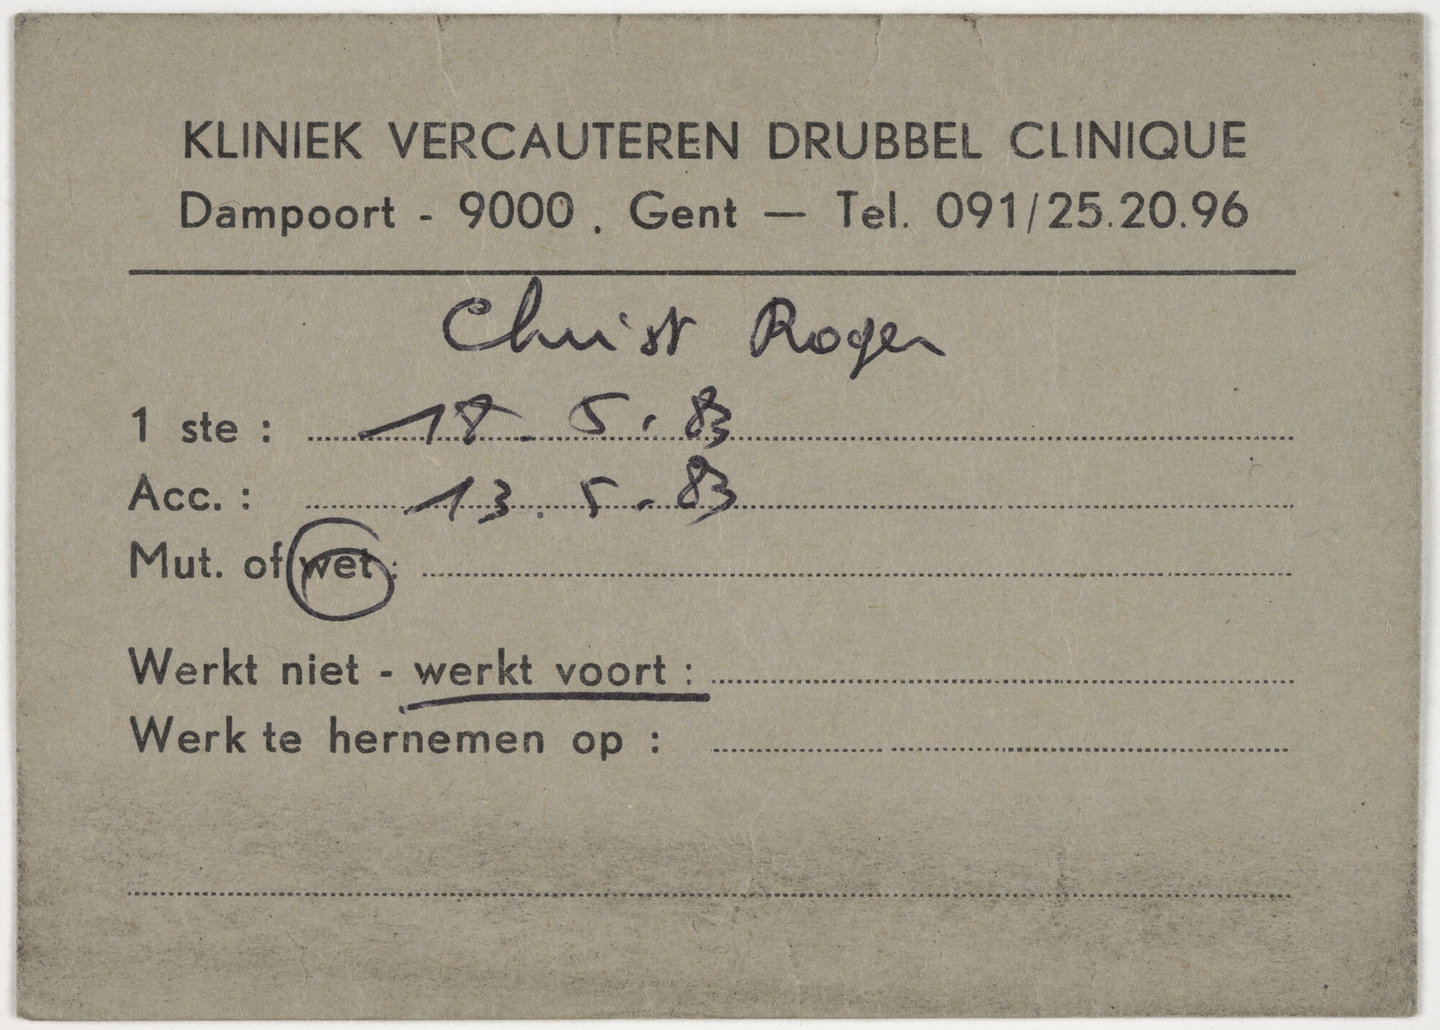 Kaart op naam van Roger Christ van Kliniek Vercauteren in Gent